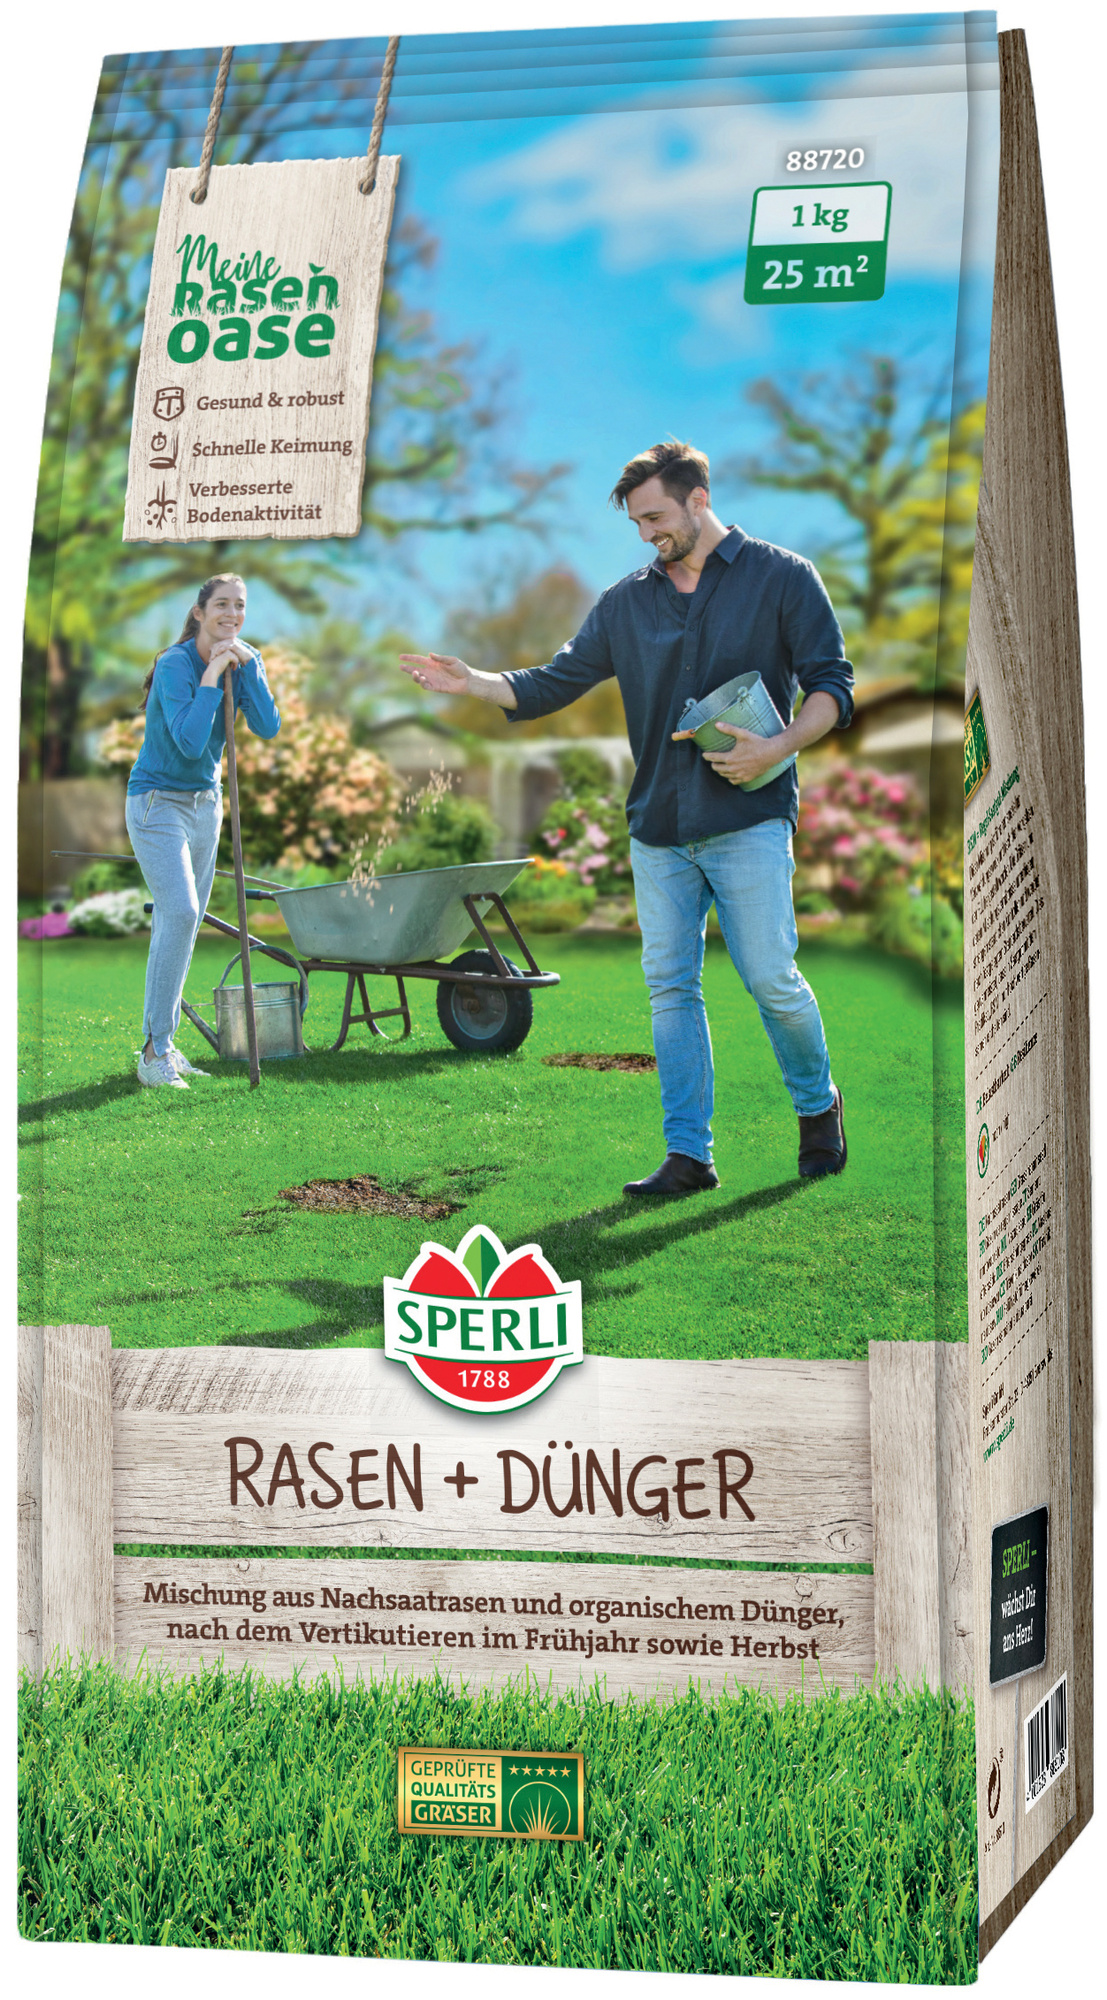 SPERLI's Rasen + Dünger, 1 kg